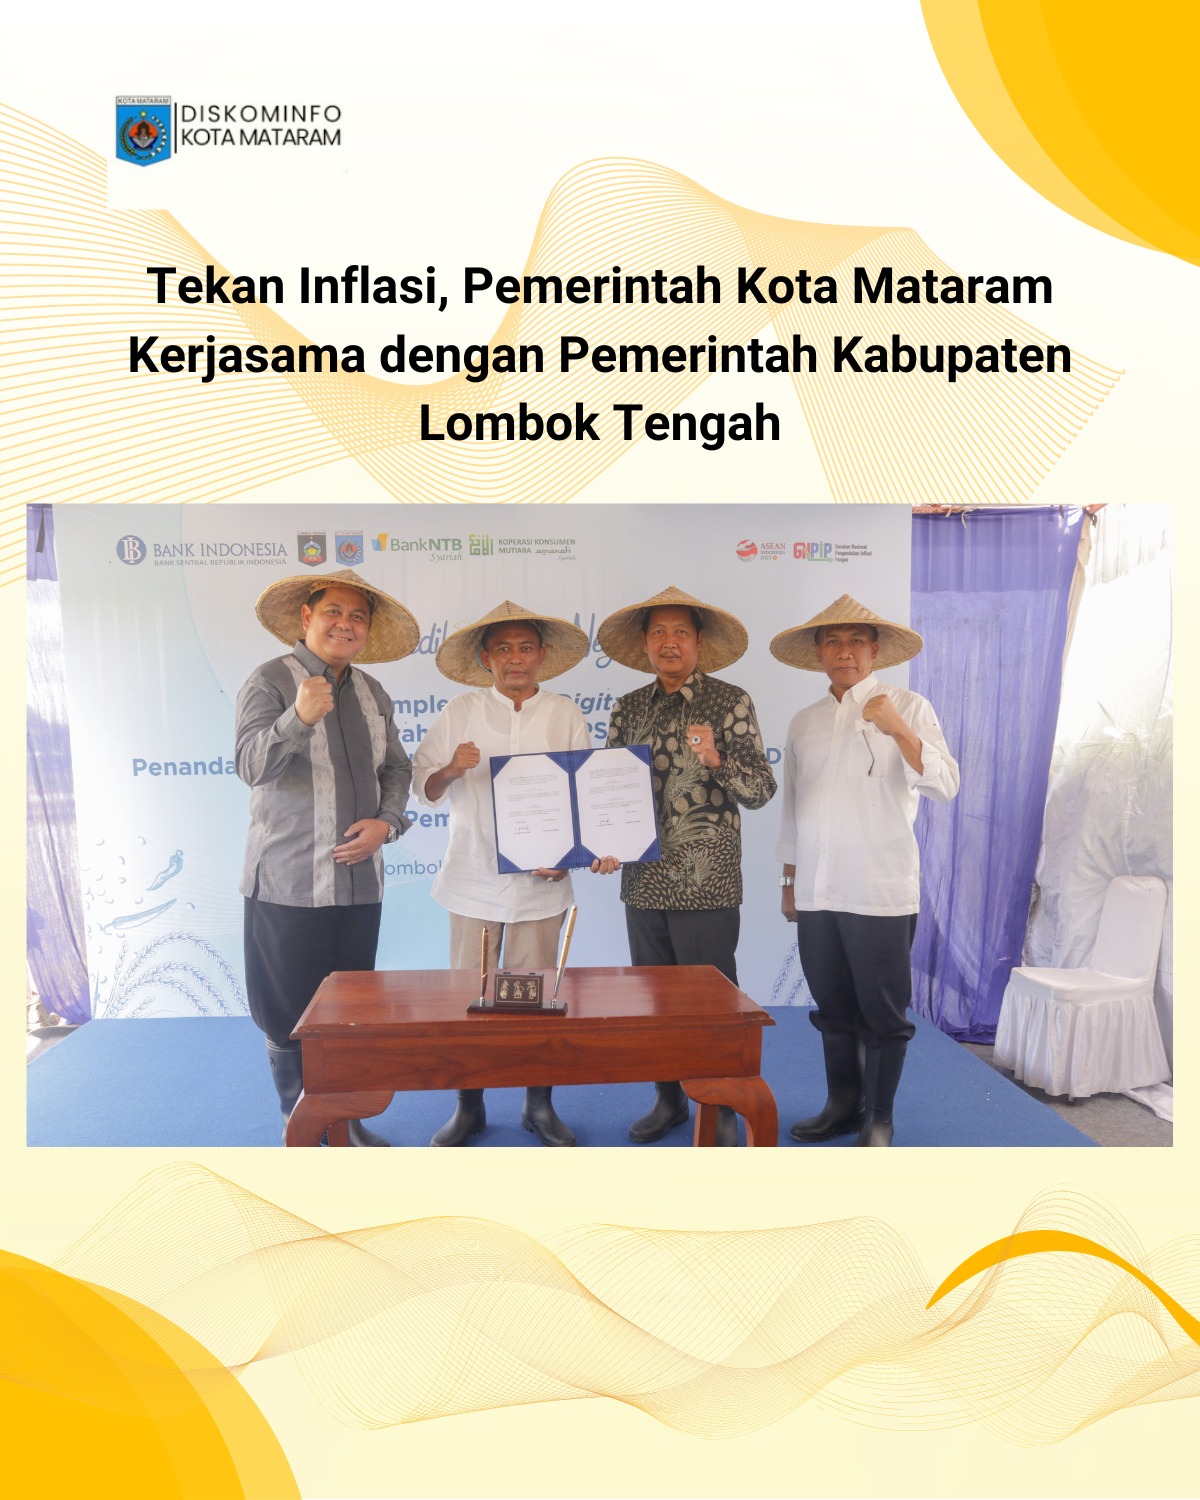 Tekan Inflasi, Pemerintah Kota Mataram Kerjasama dengan Pemerintah Kabupaten Lombok Tengah